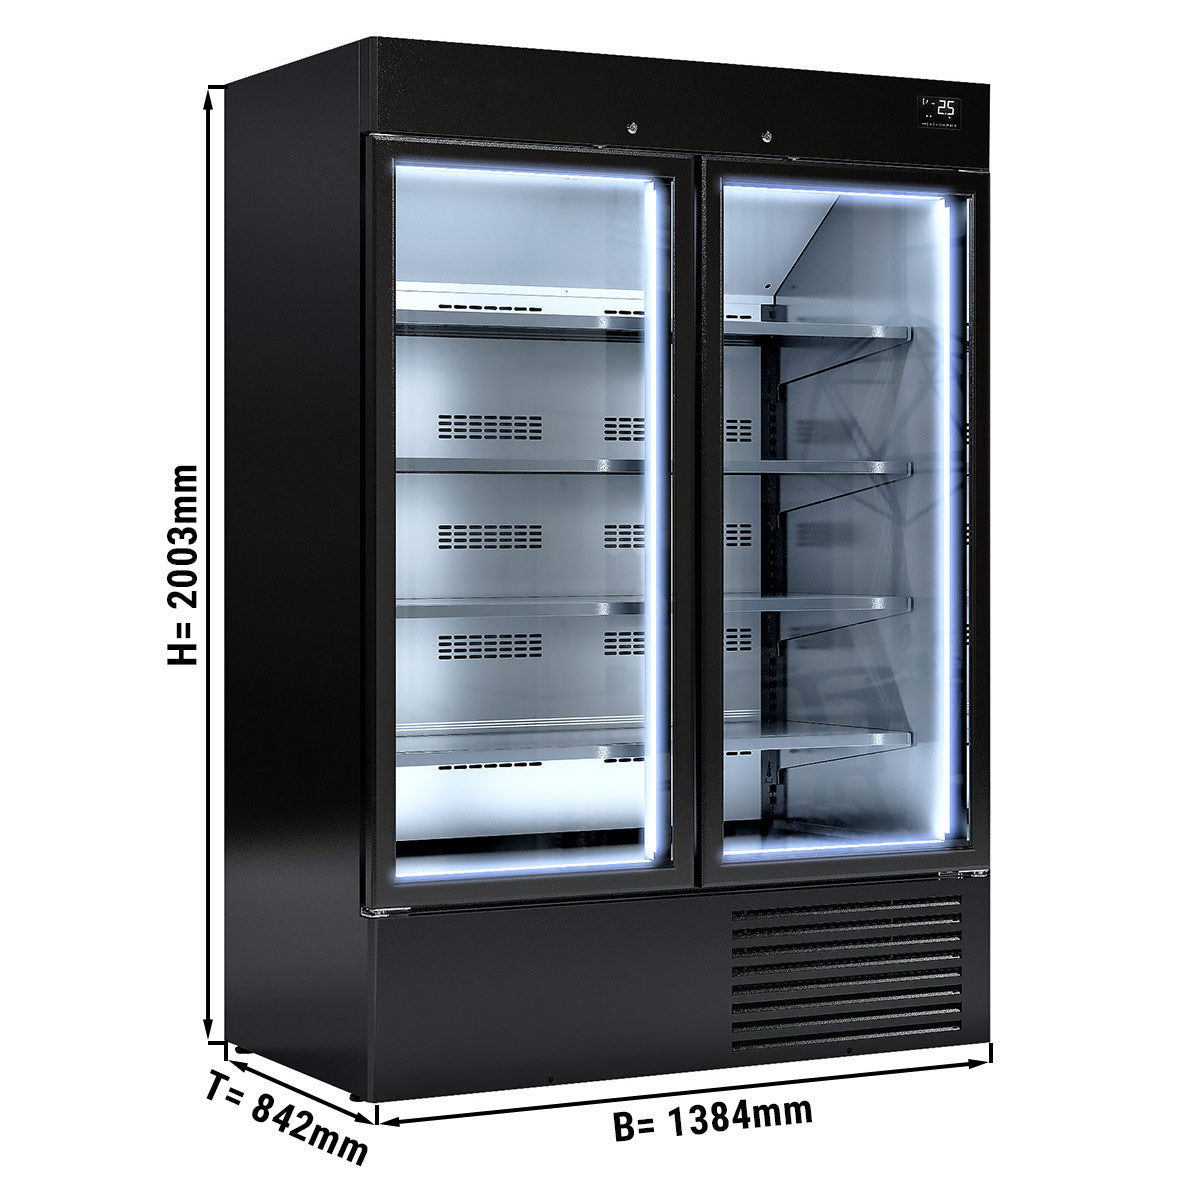 Flaskekjøleskab - 1310 liter - med 2 dører - sort